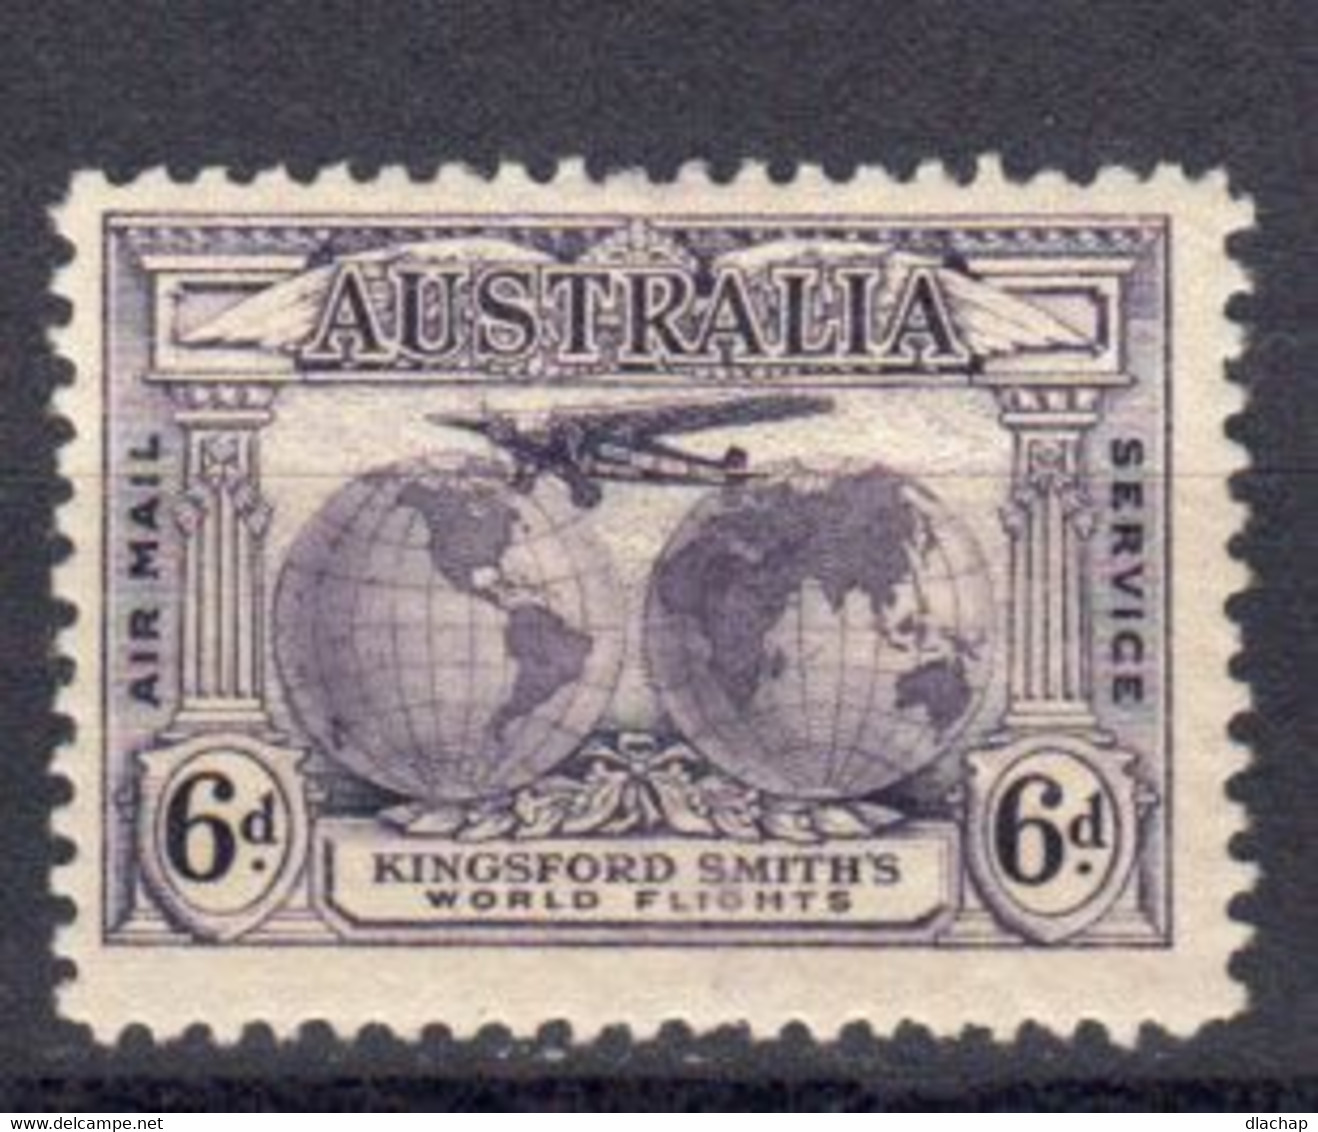 Australie Poste Aerienne 1931 Yvert 3 * Neuf Avec Charniere - Ungebraucht